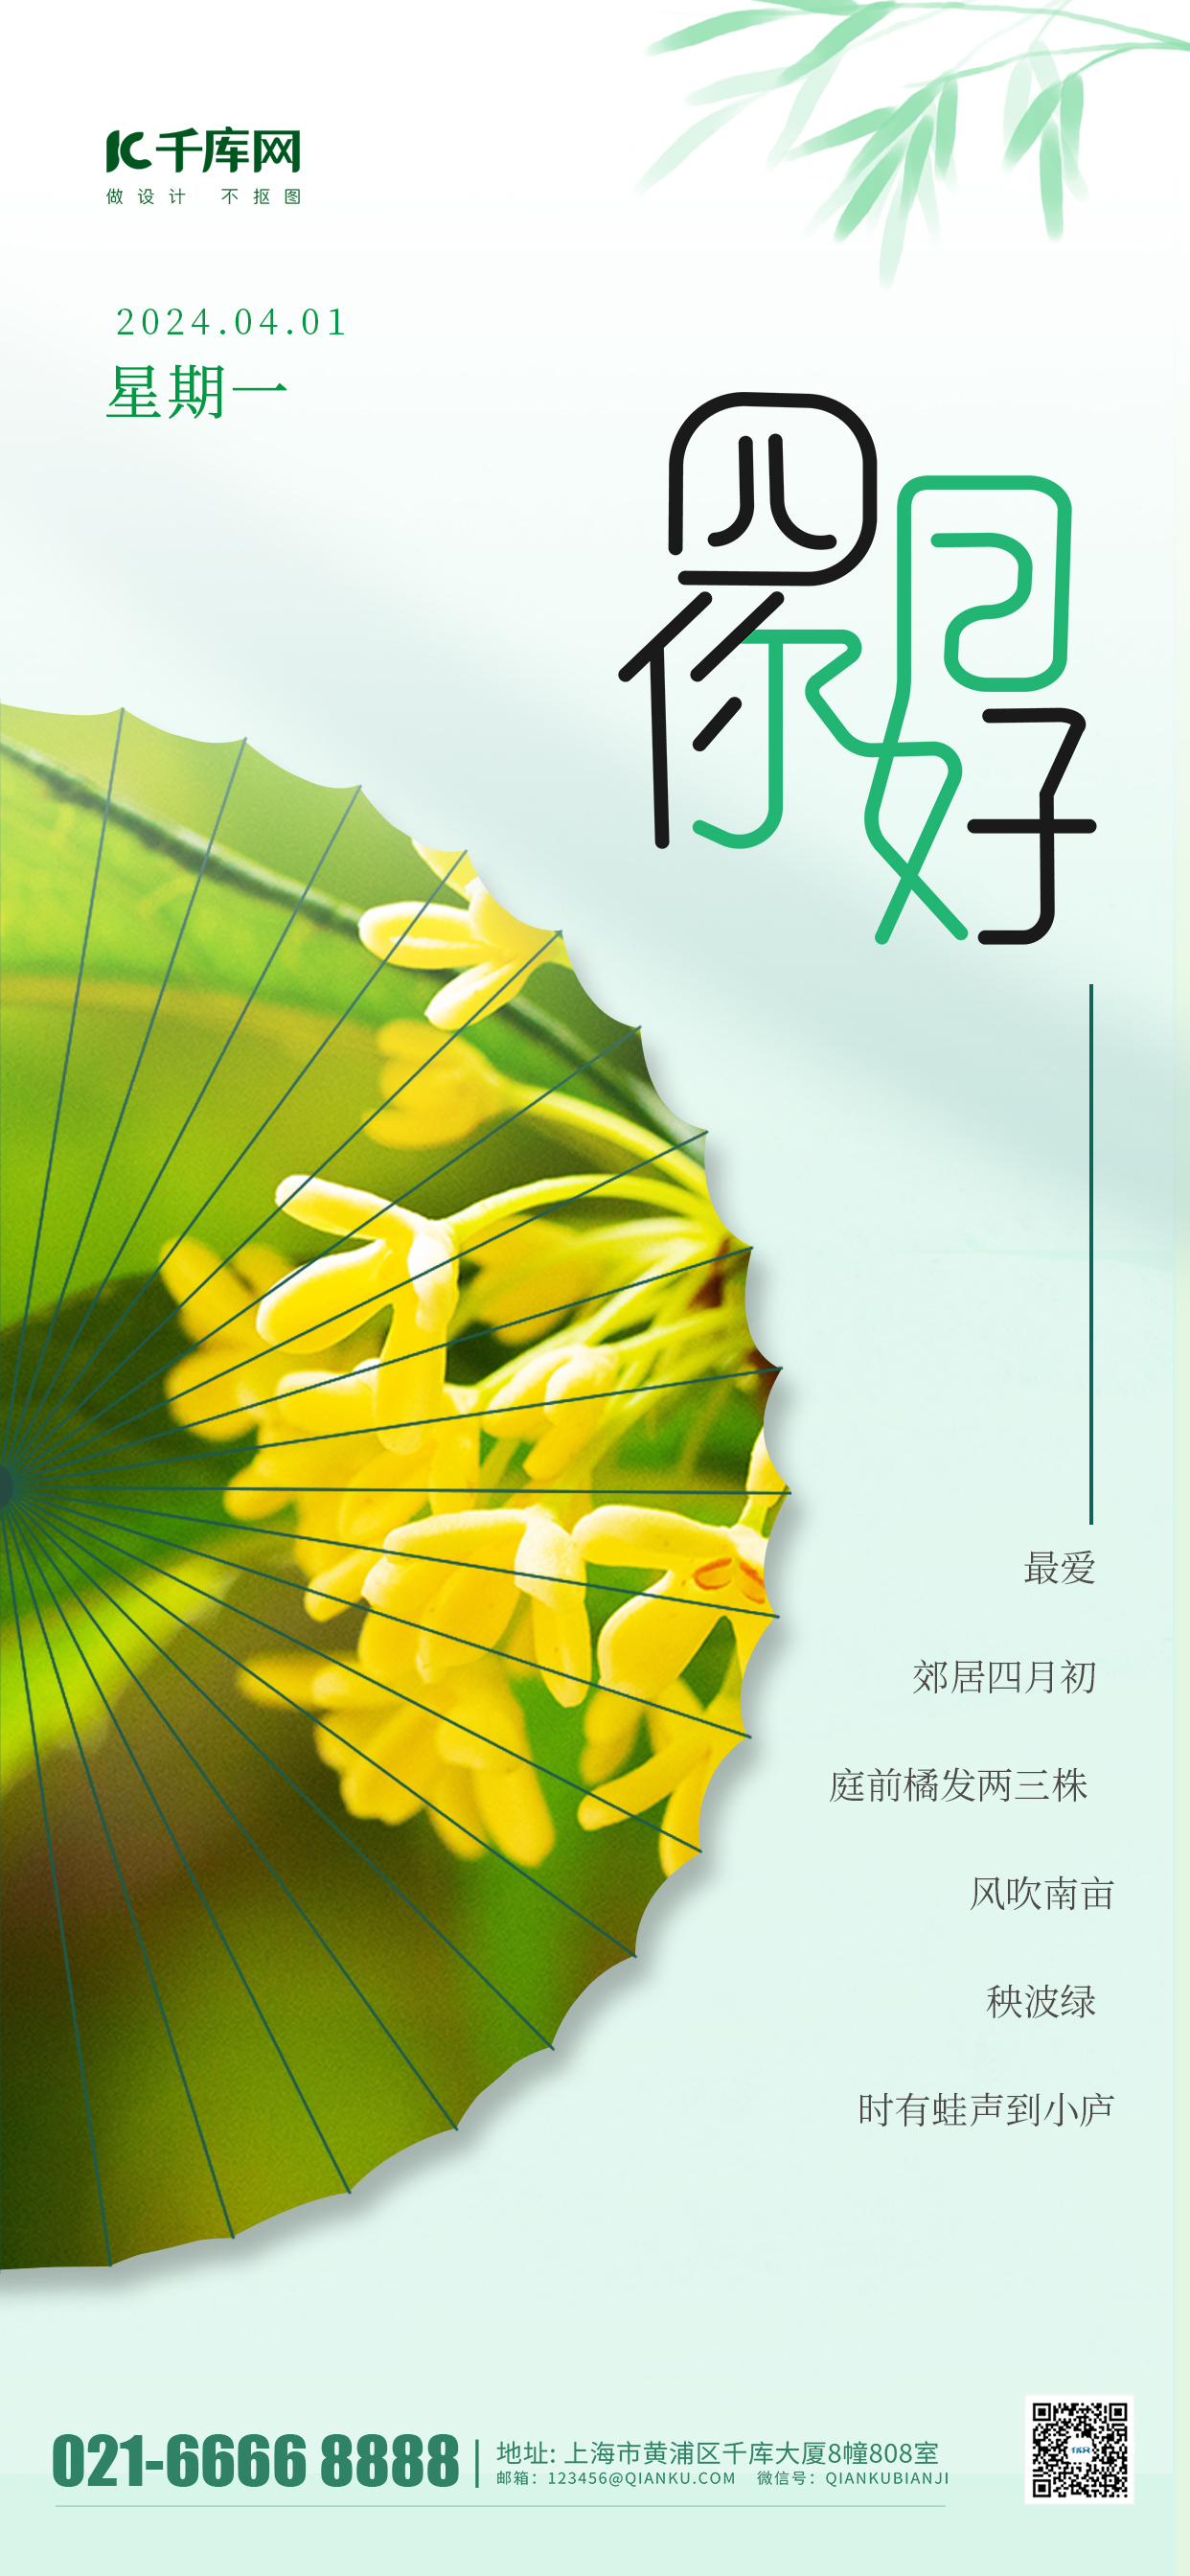 清新镂空摄影图4月你好镂空摄影图绿色渐变手机海报海报制作图片